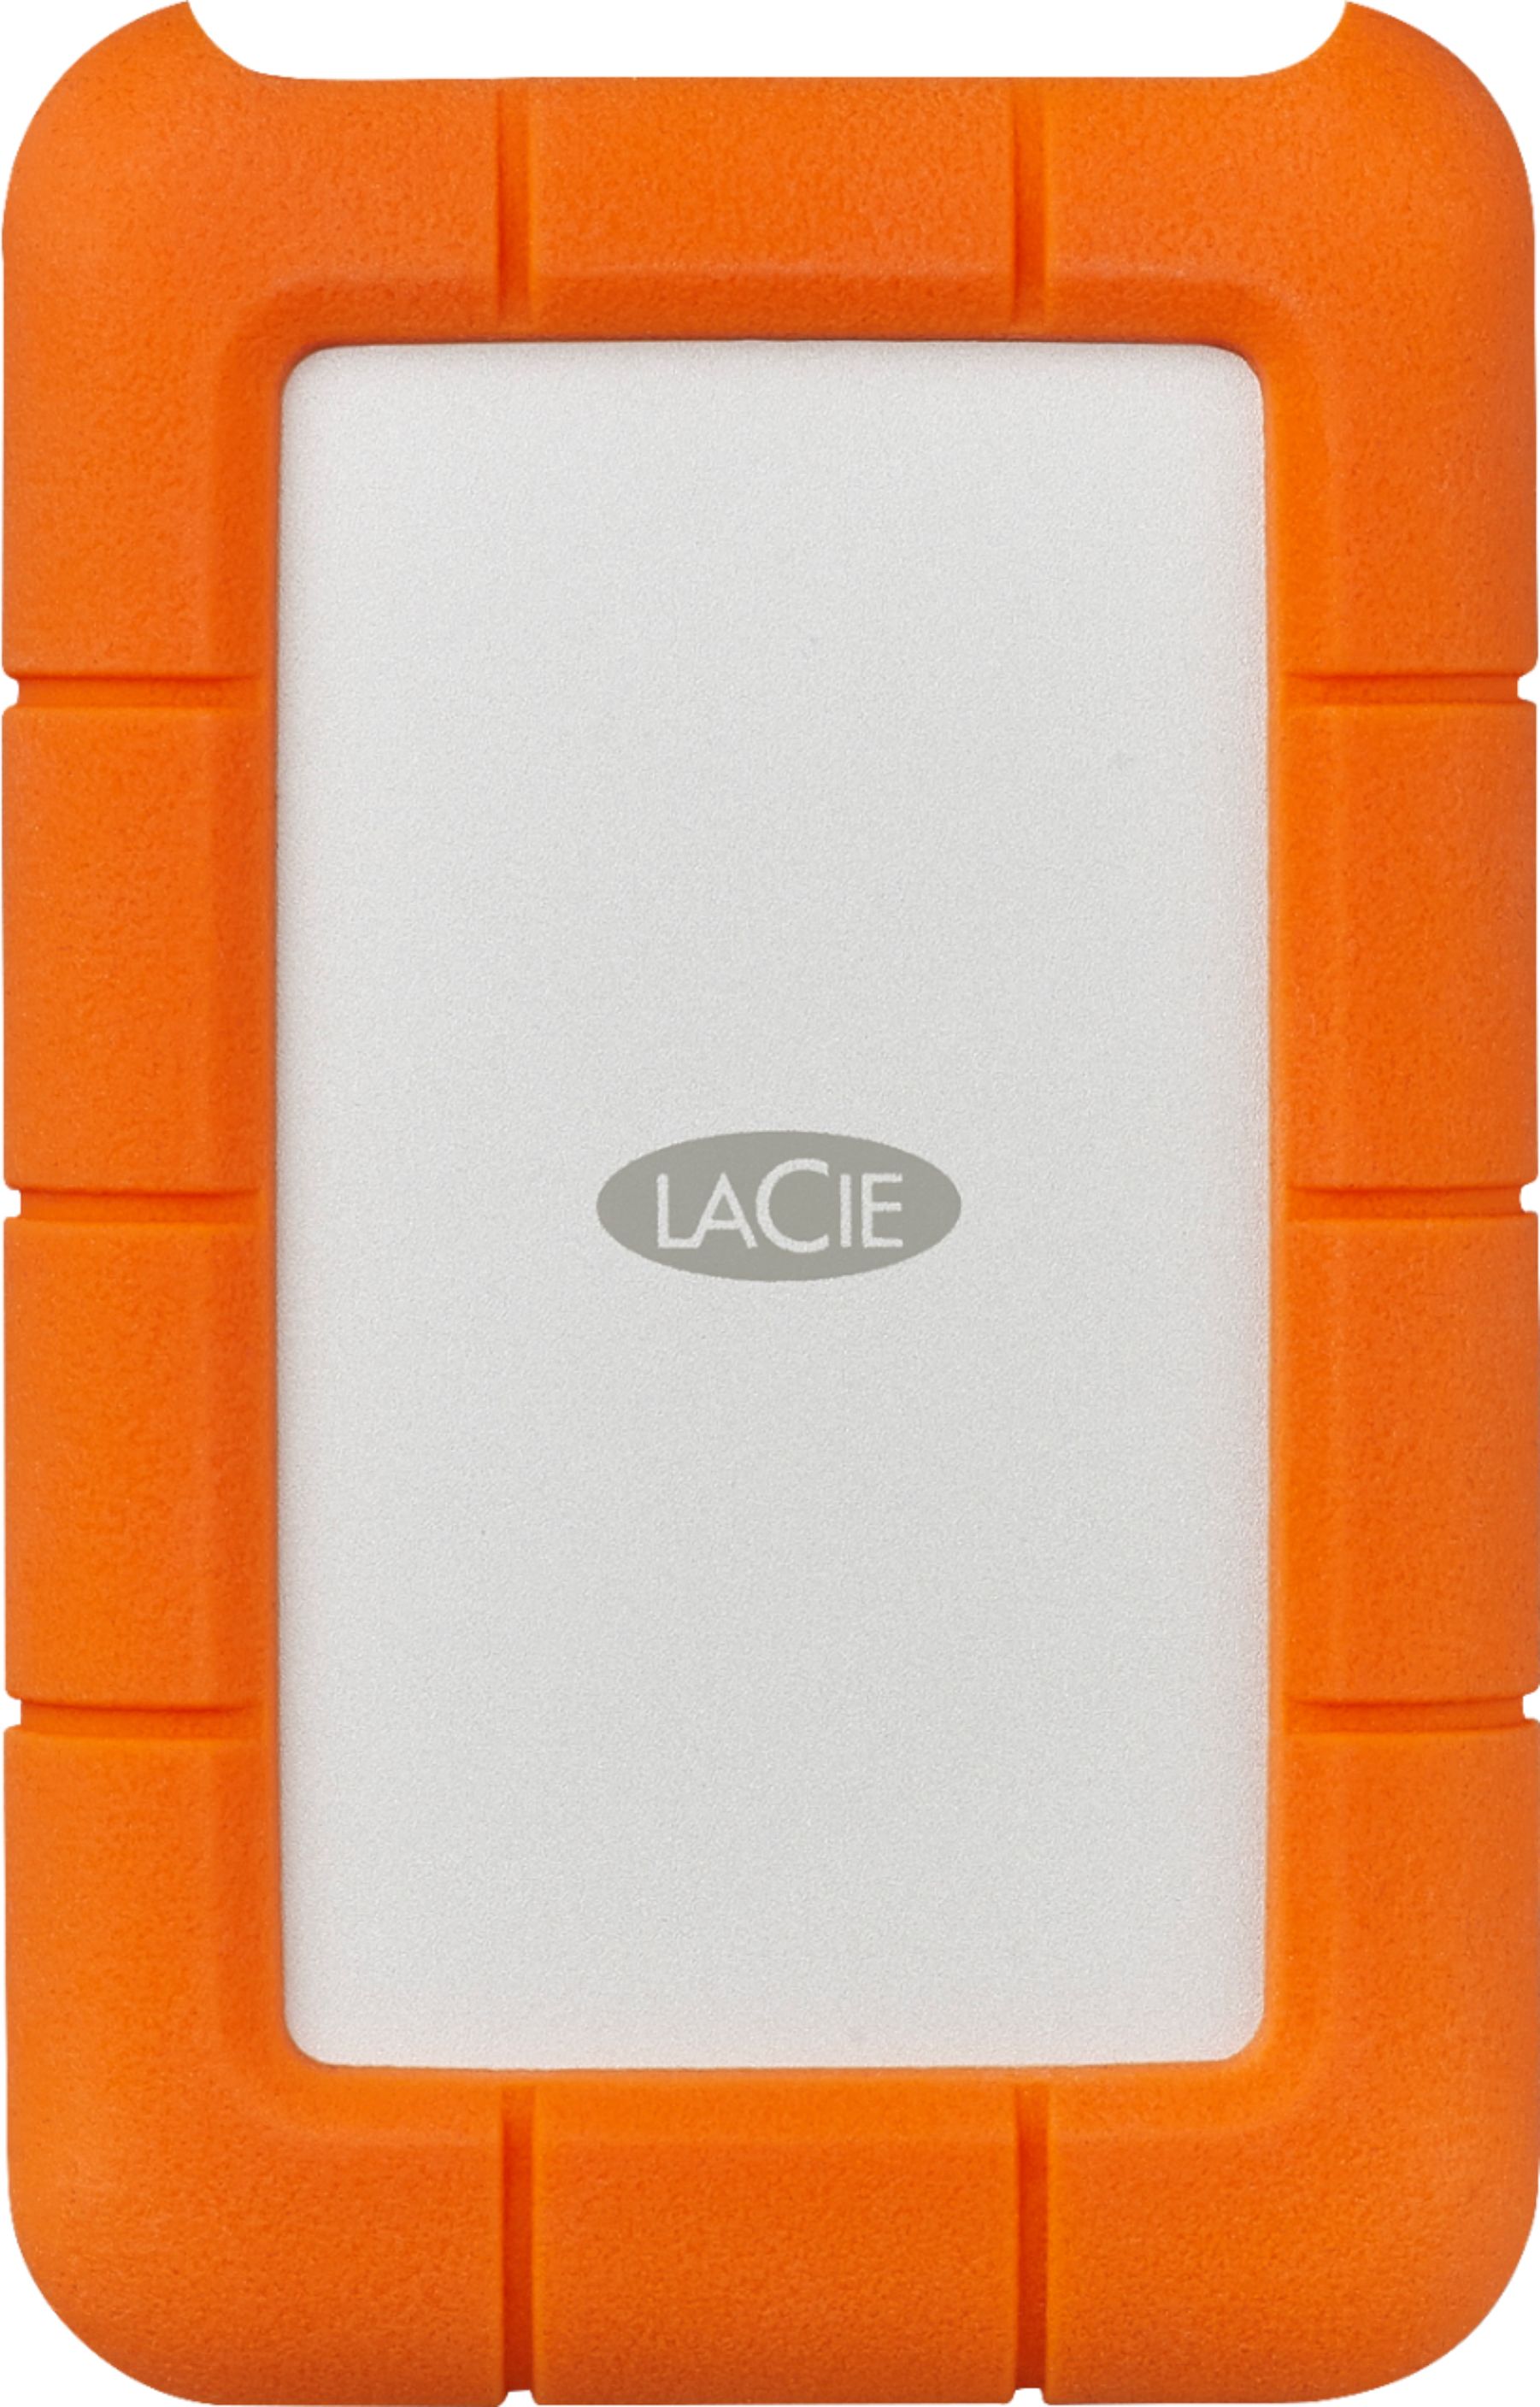 LaCie Rugged 5TB External USB-C, USB 3.1 Gen 1 Portable Hard Drive